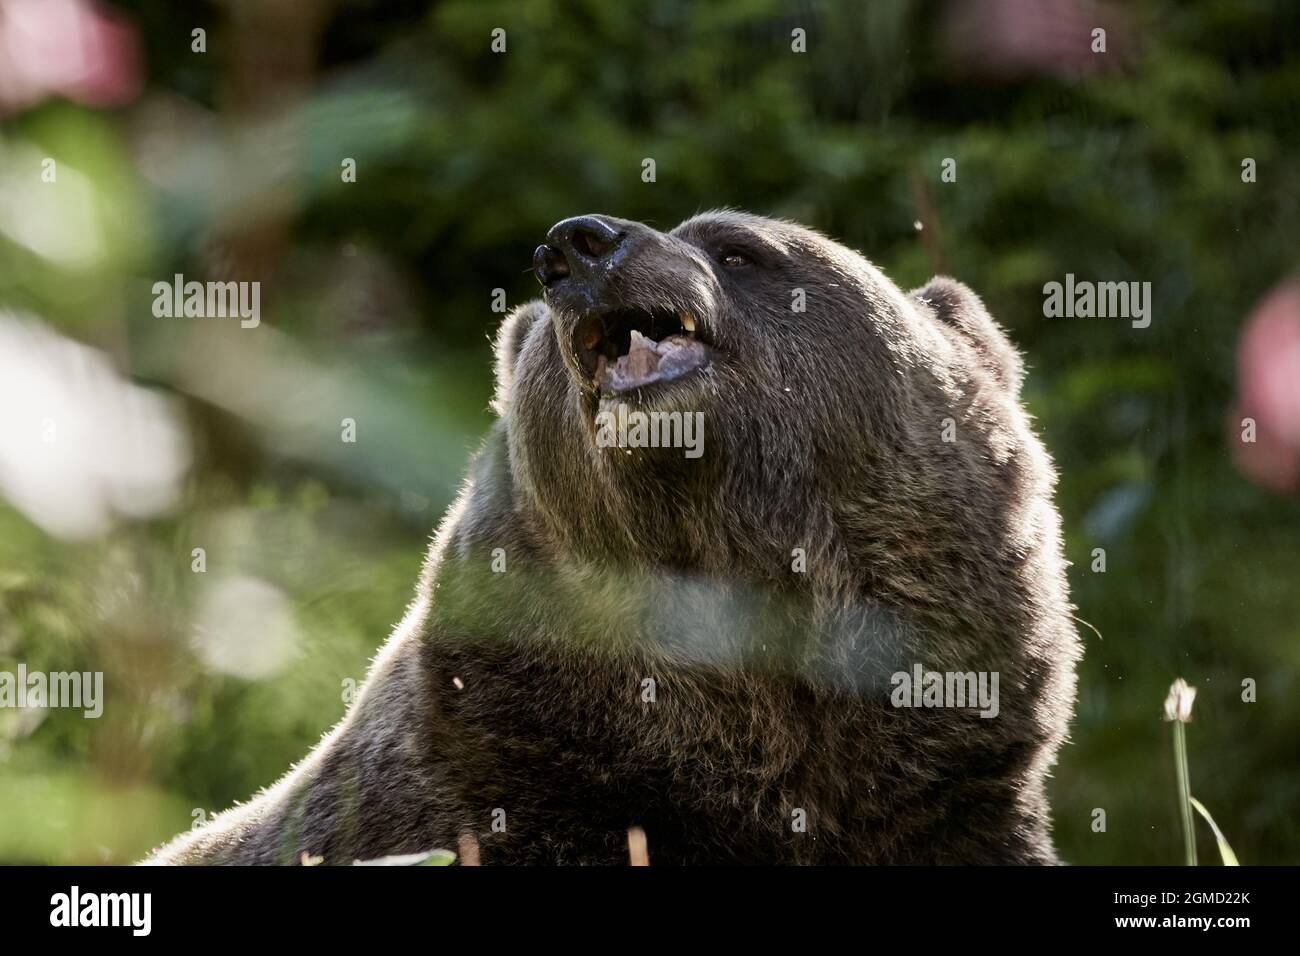 Primo piano di un orso bruno europeo masticando con la bocca aperta nella foresta, Ursus arctos. Foto Stock